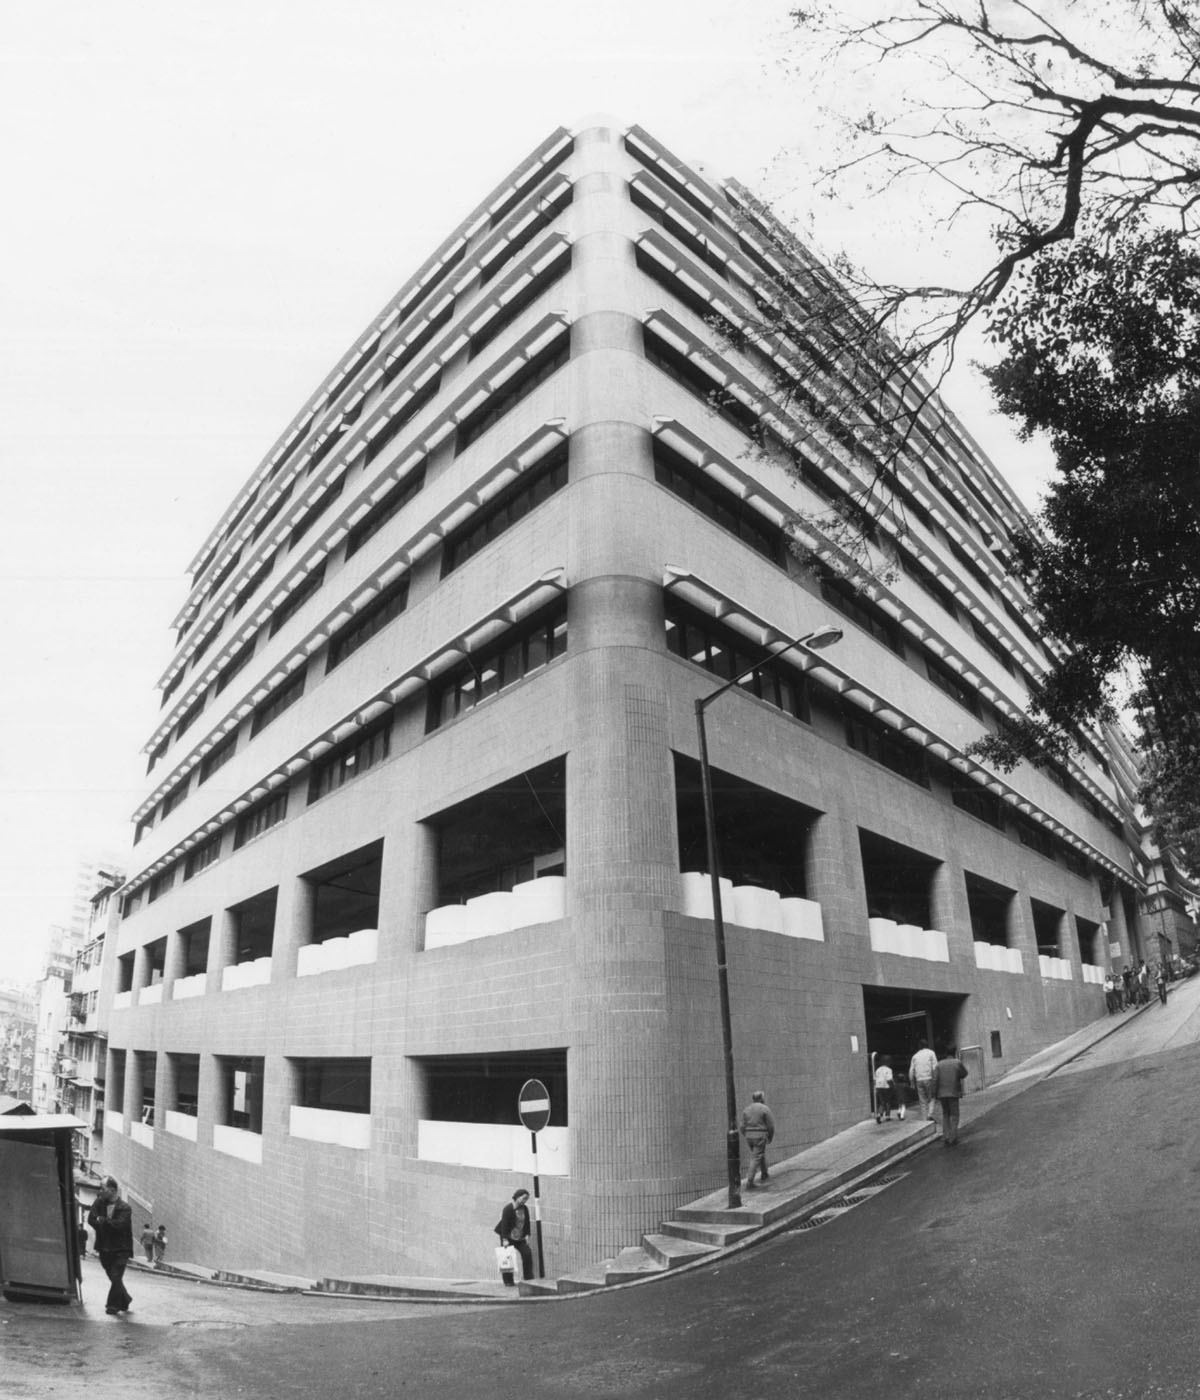 Prince Philip Dental Hospital in 1981